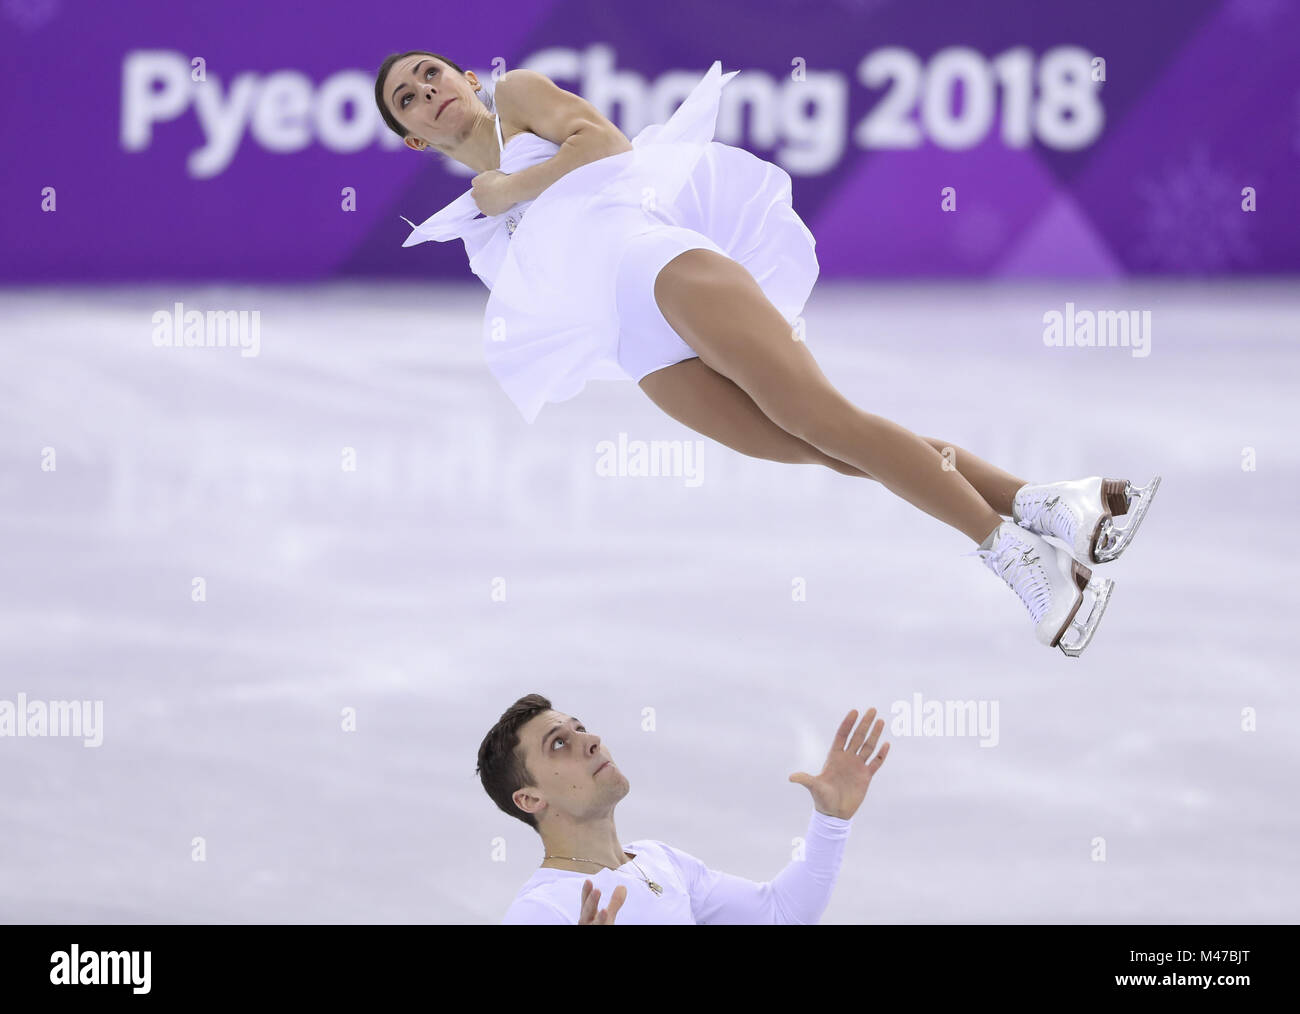 Pyeongchang, Corée du Sud. Feb 15, 2018. Les athlètes olympiques de la Russie Evgenia Tarasova (Haut) et Vladimir Morozov en concurrence au cours de la paire skating patinage libre du patinage artistique à l'occasion des Jeux Olympiques d'hiver de PyeongChang 2018, à Gangneung Ice Arena, de Corée du Sud, le 15 février 2018. Evgenia Tarasova et Vladimir Morozov a obtenu la 4ème place dans le cas du patinage en couple avec 224,93 points au total. Credit : Han Yan/Xinhua/Alamy Live News Banque D'Images